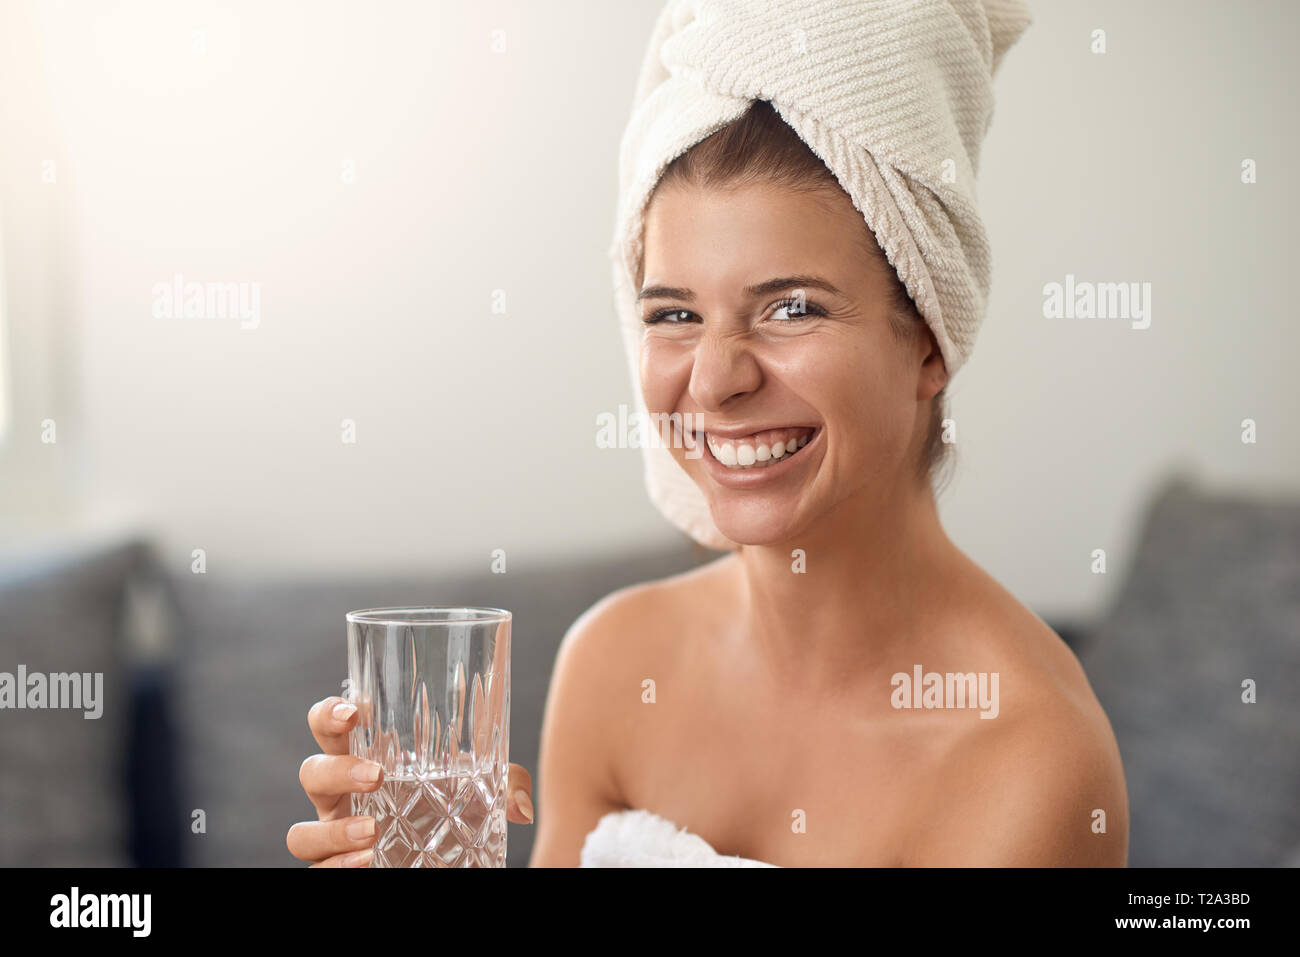 Gerne attraktive junge Frau mit einem netten freundlichen Grinsen tragen ein sauberes weißes Tuch um Ihr Haar halten ein Glas frisches Wasser am cam Lachen Stockfoto